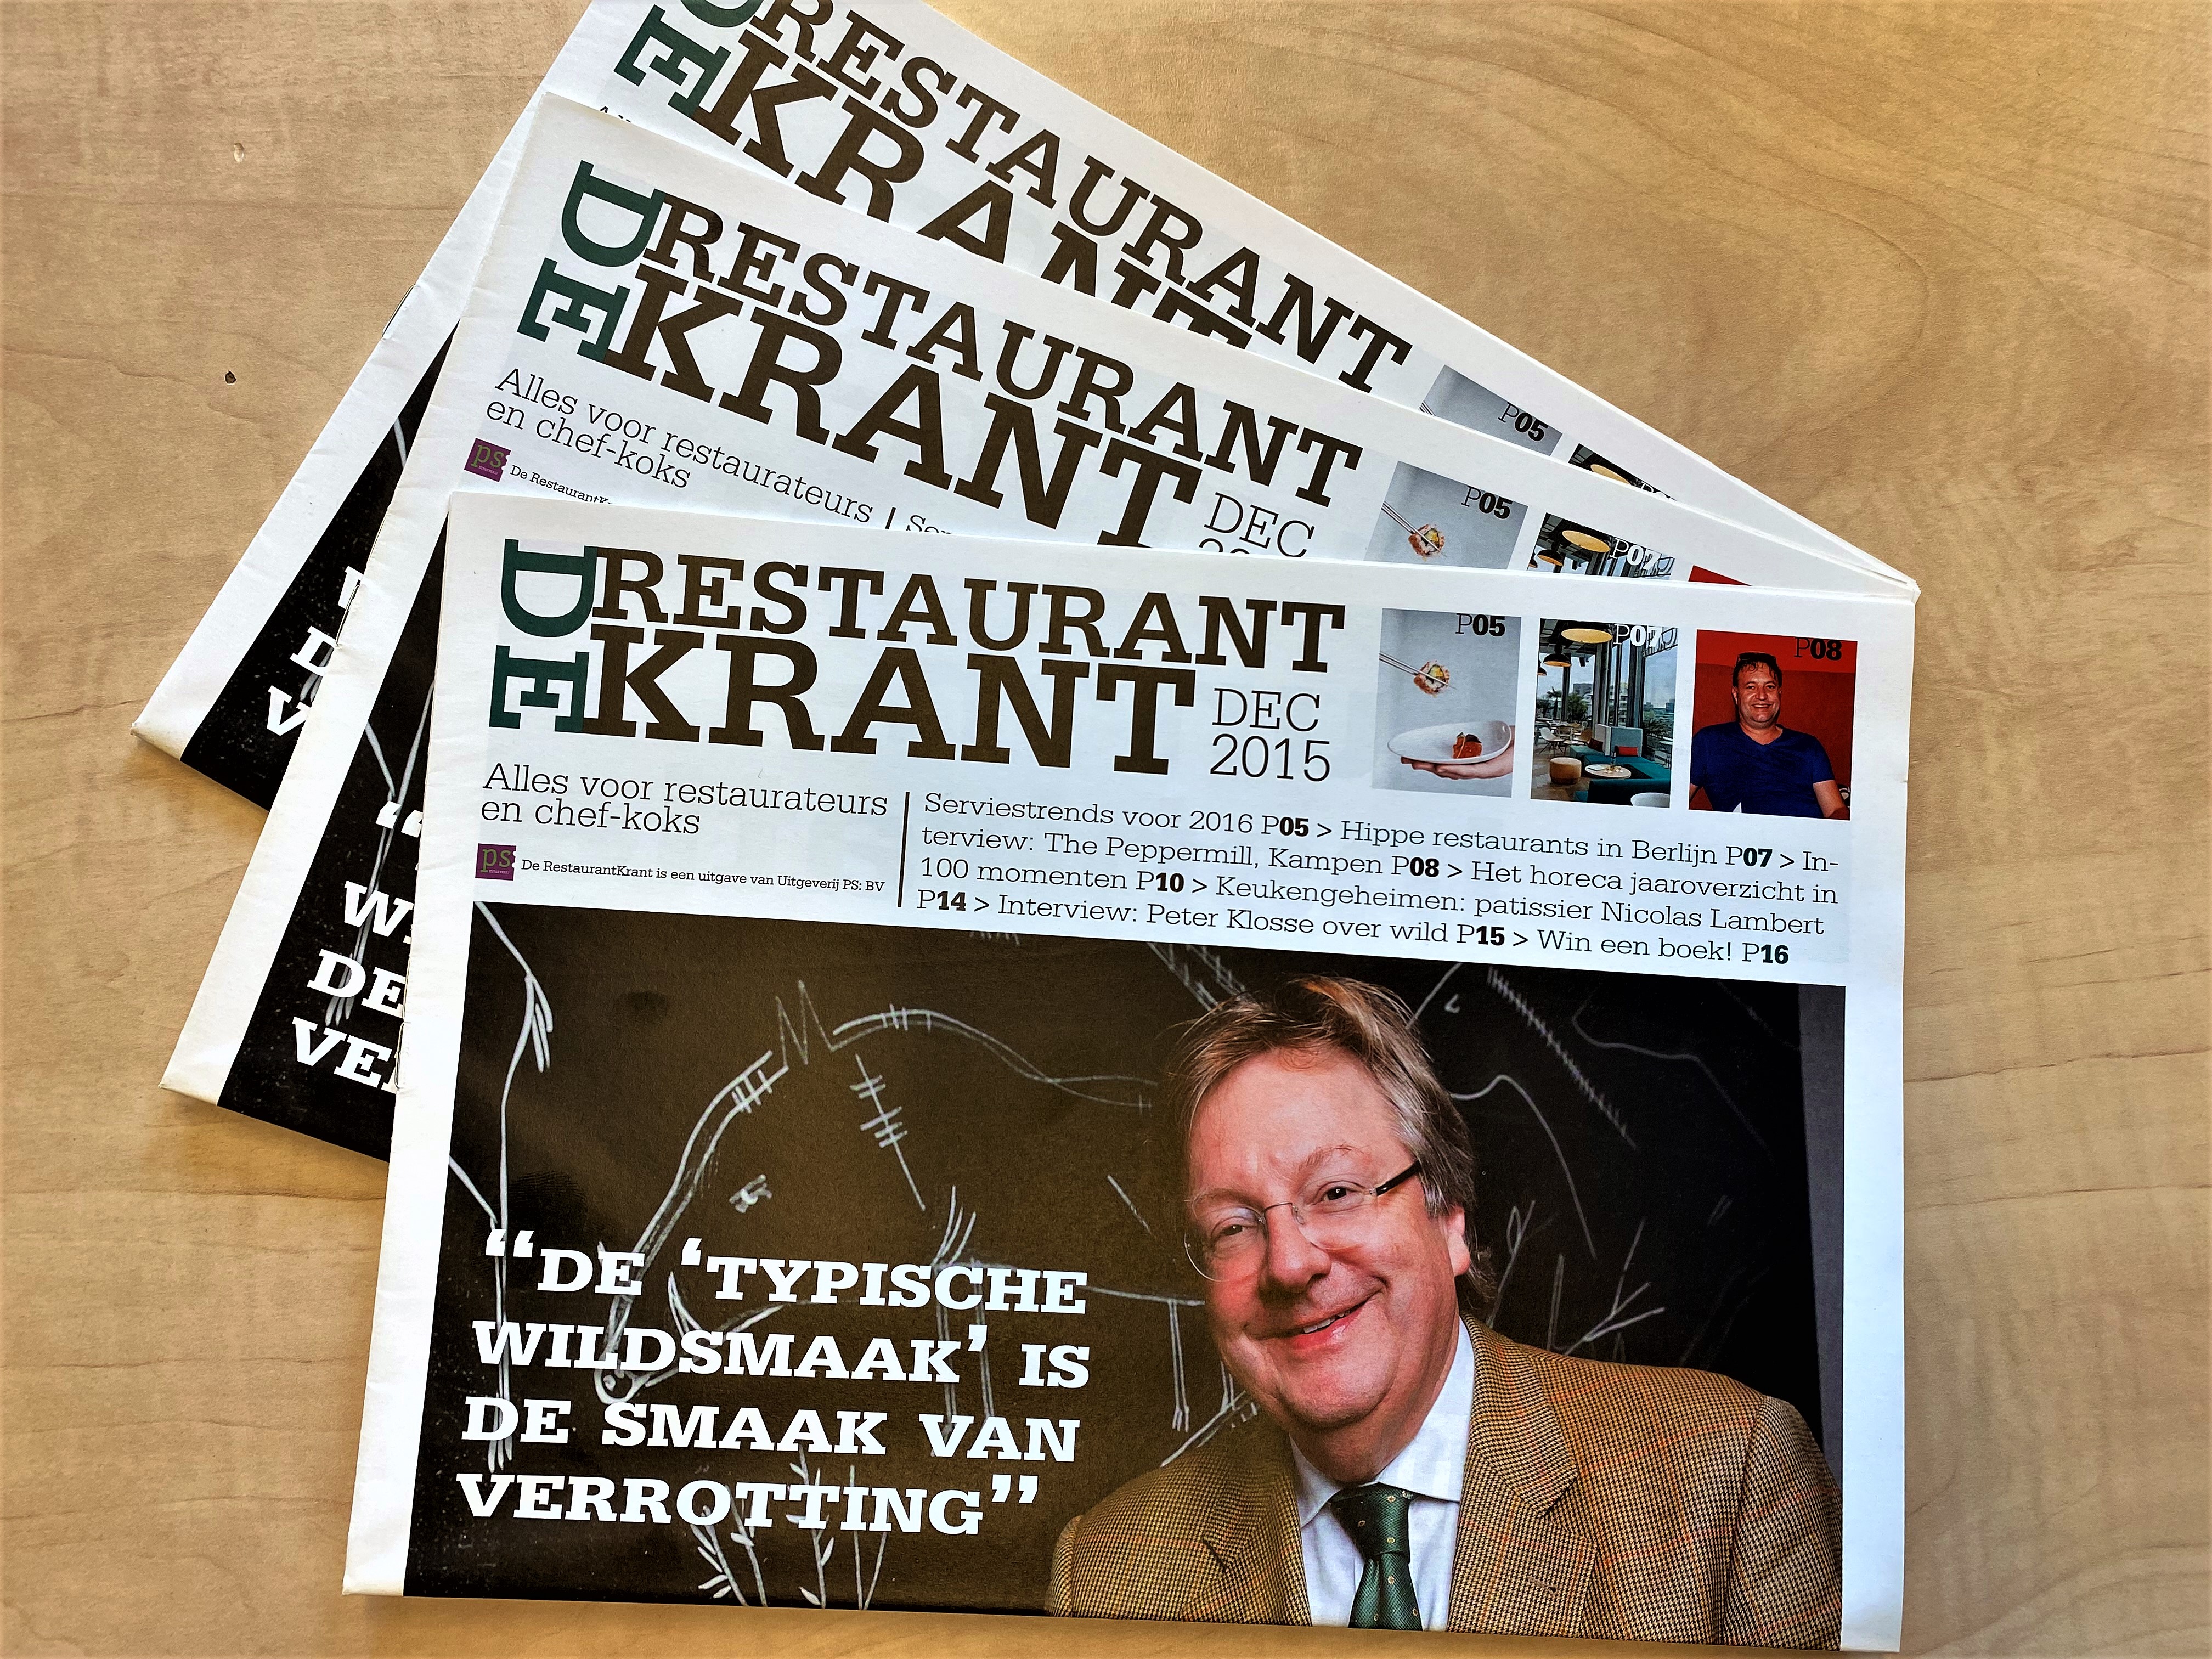 15 jaar De RestaurantKrant (2015): Peter Klosse over wildfabelen